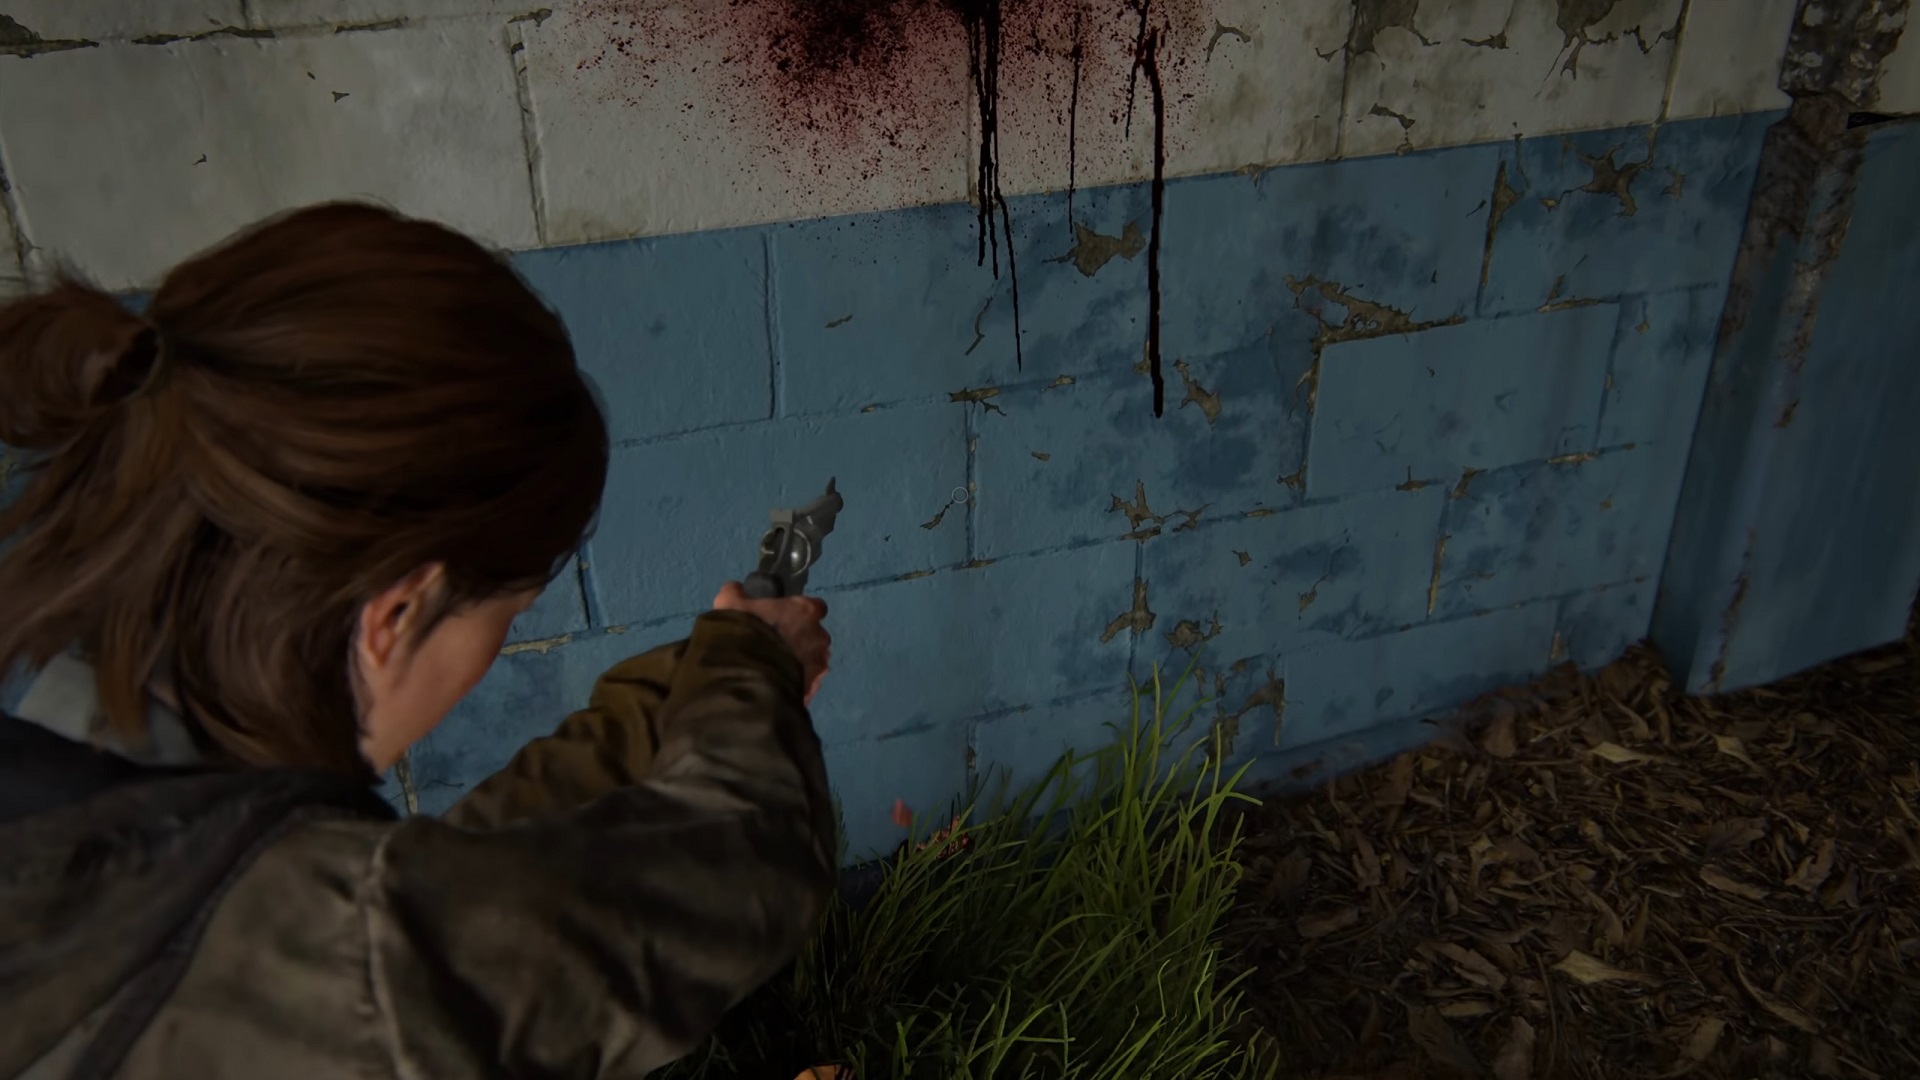 جاری شدن خون به همراه امعاء و احشاء از روی در و دیوار در بازی The Last of Us Part 2